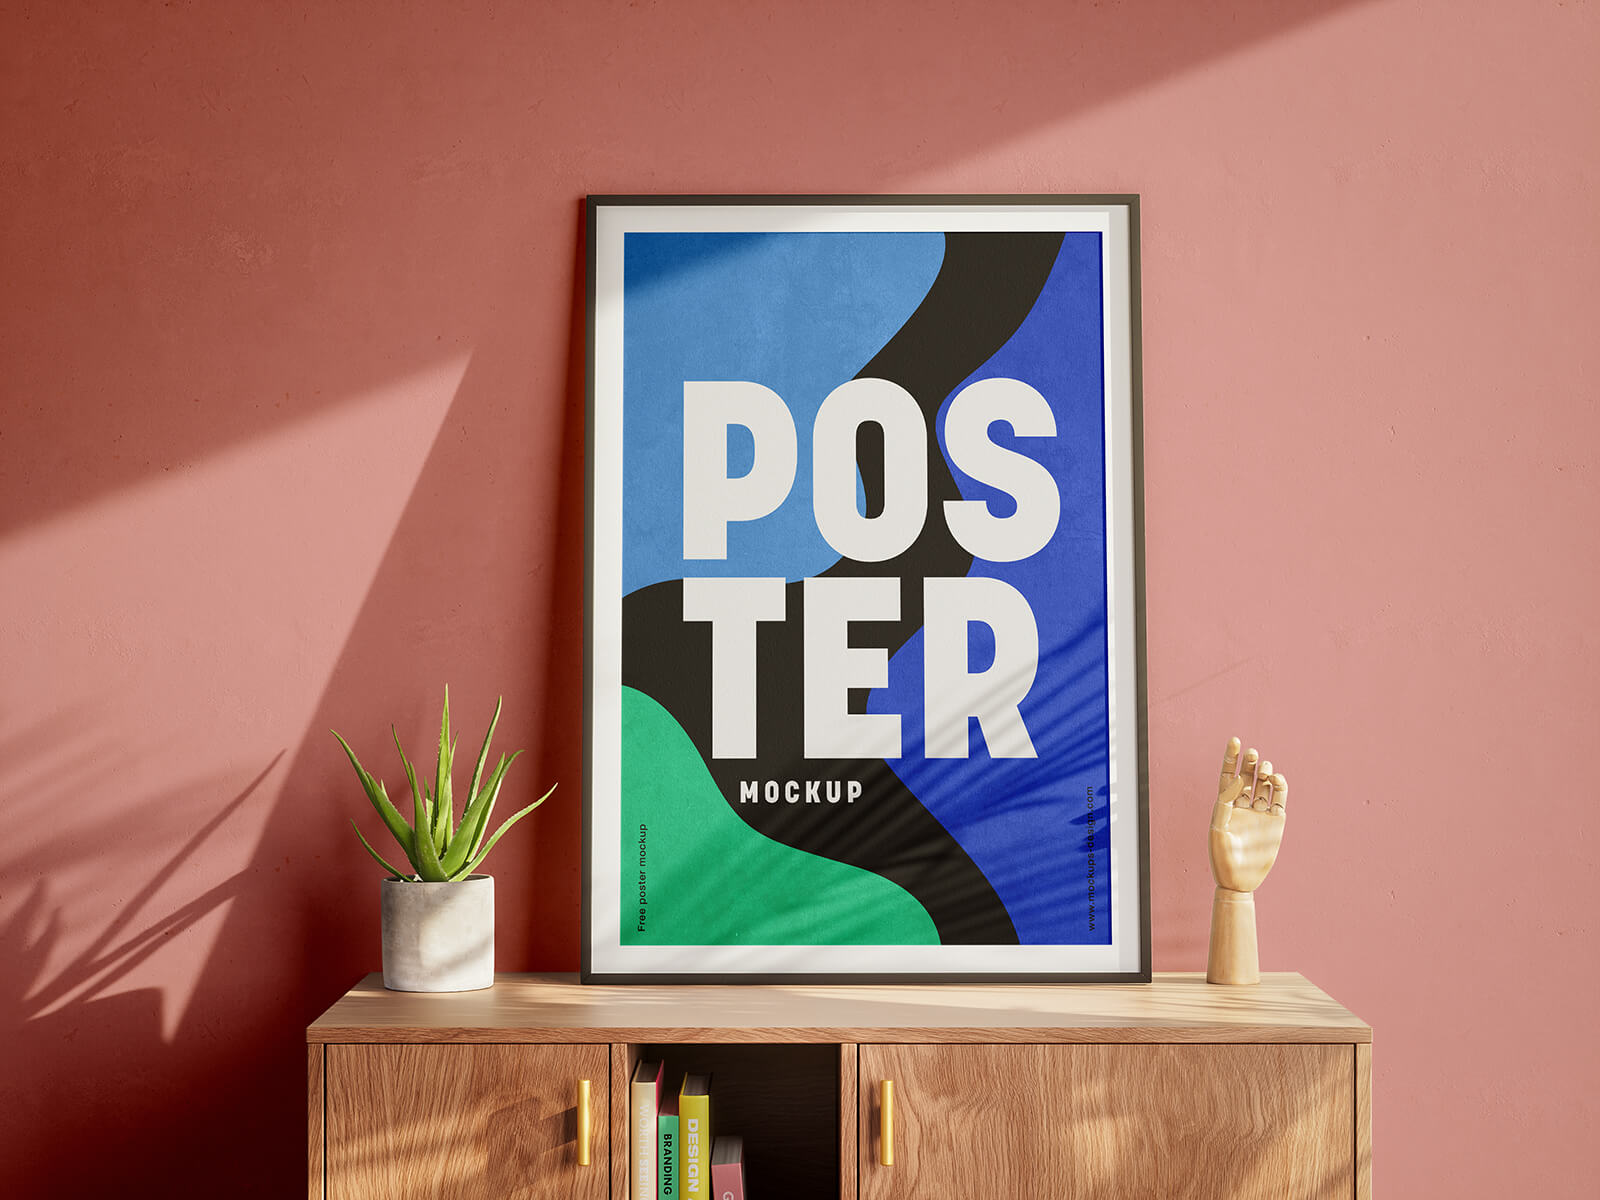 Free Framed Poster On Wooden Dresser Mockup PSD